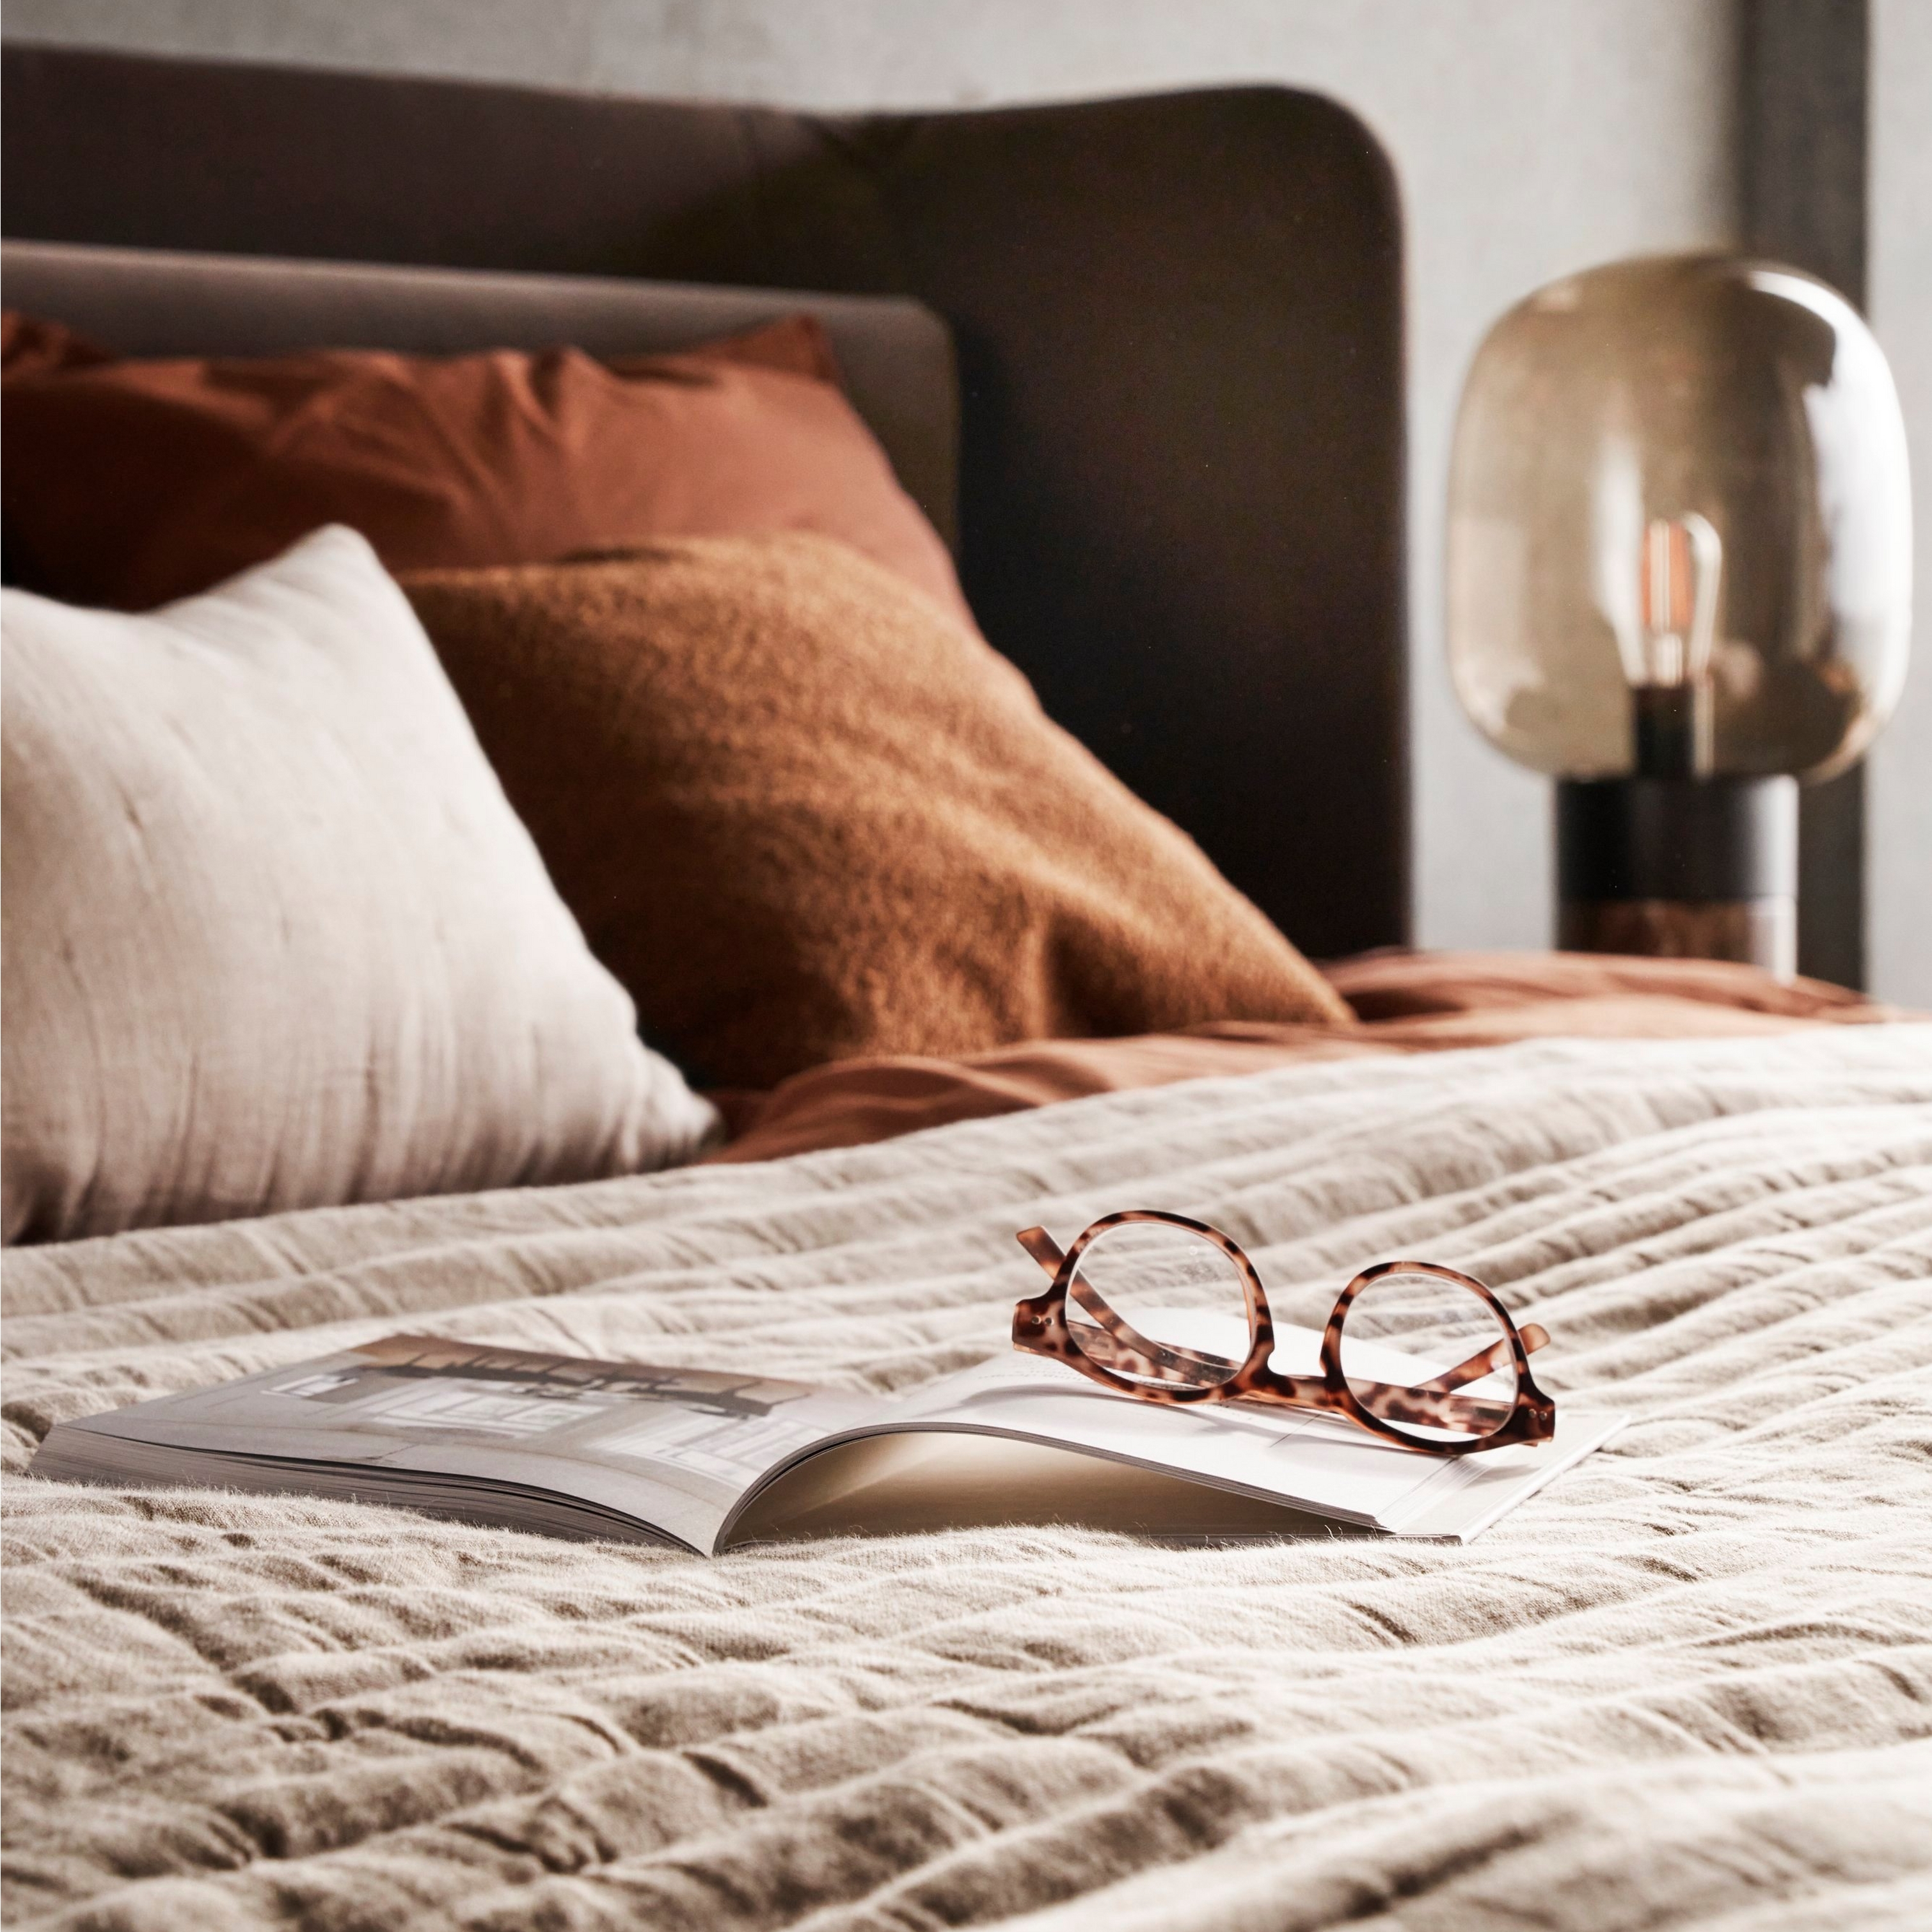 Łóżko z teksturowaną pościelą, okulary leżące na otwartej książce i delikatne oświetlenie przy łóżku.